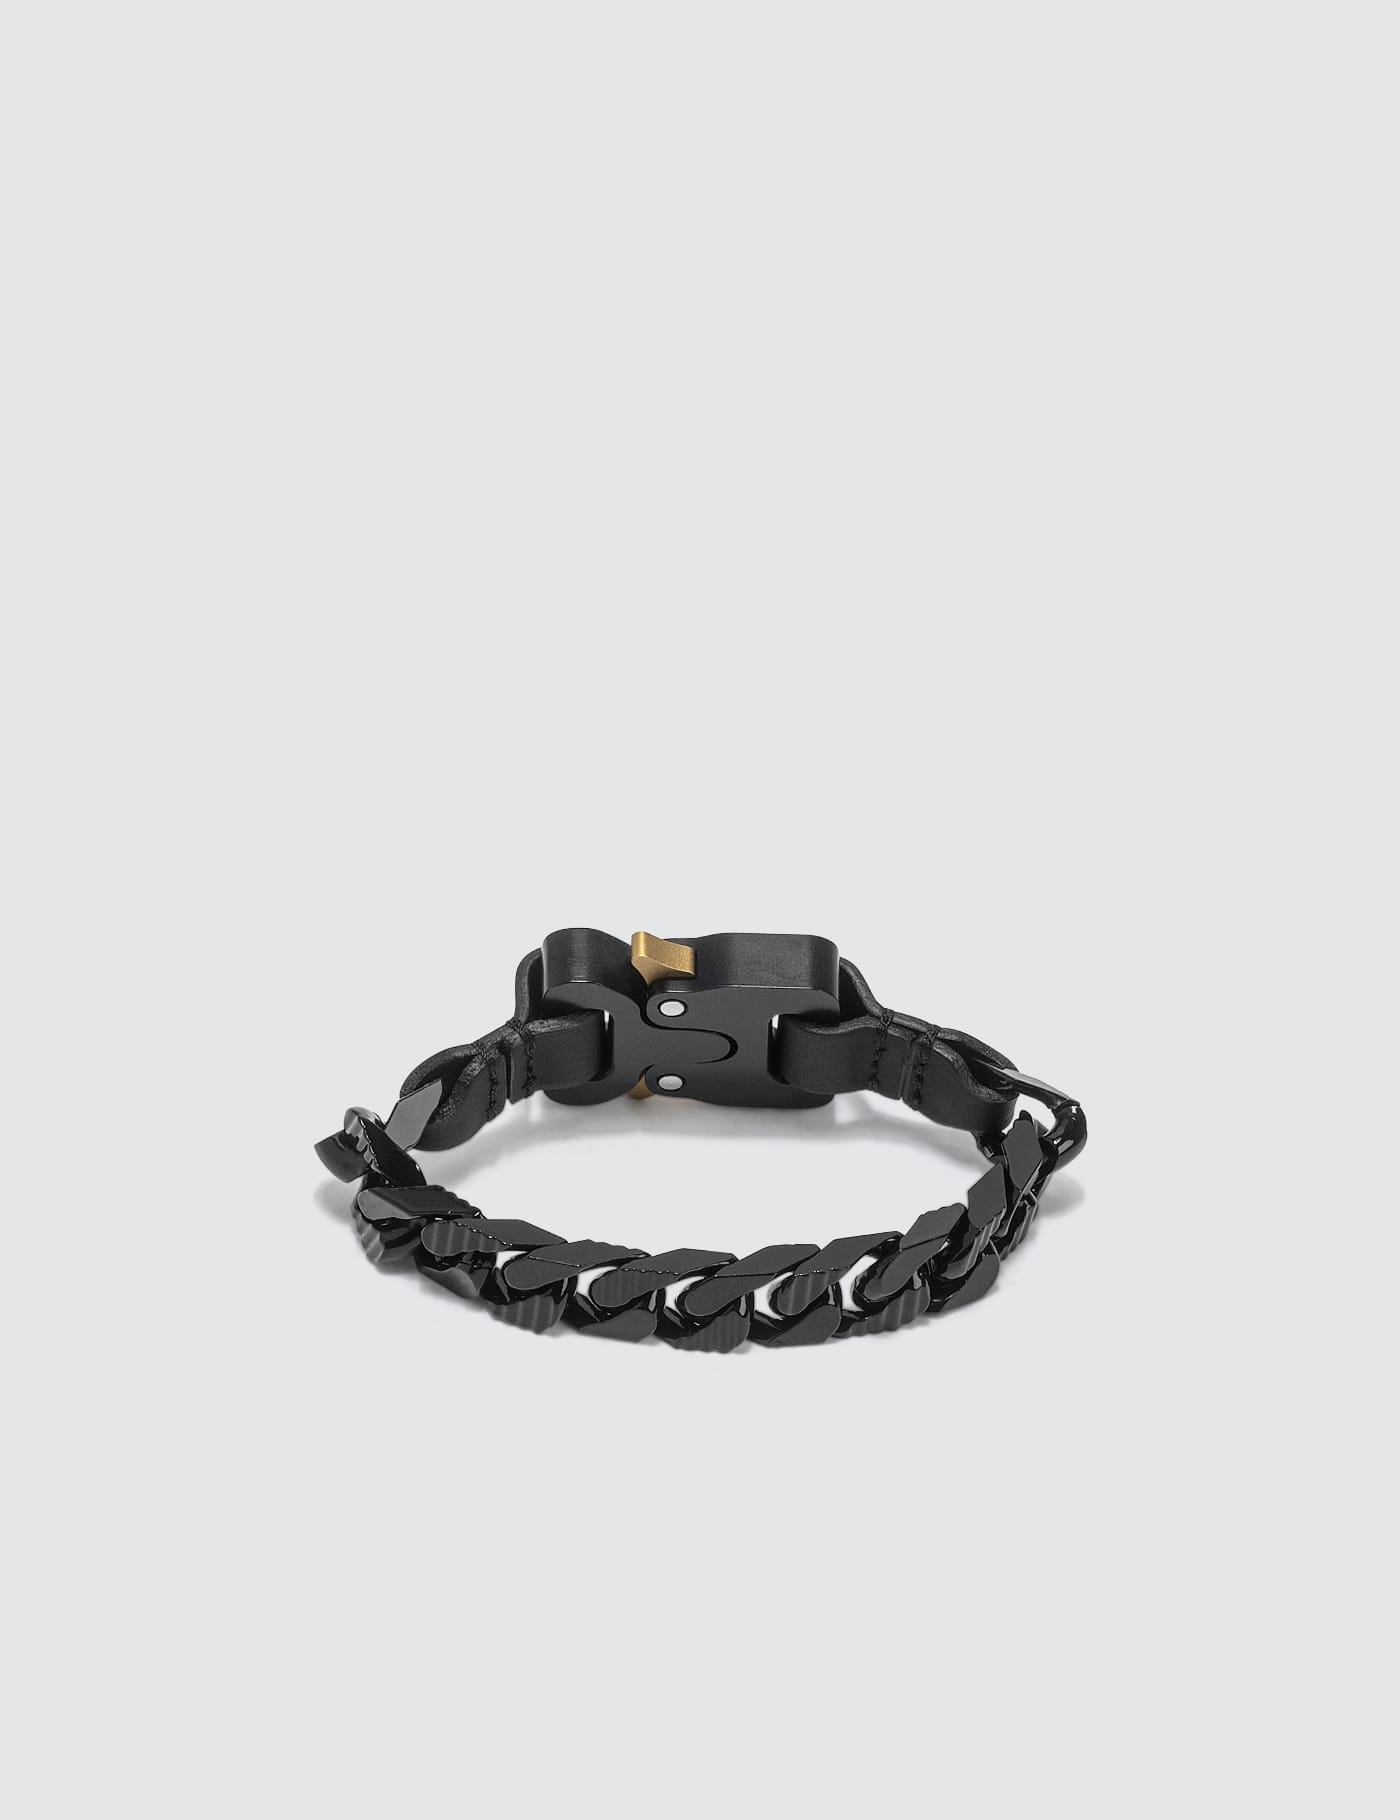 Moncler Genius - Moncler Genius x 1017 ALYX 9SM Bracelet | HBX 